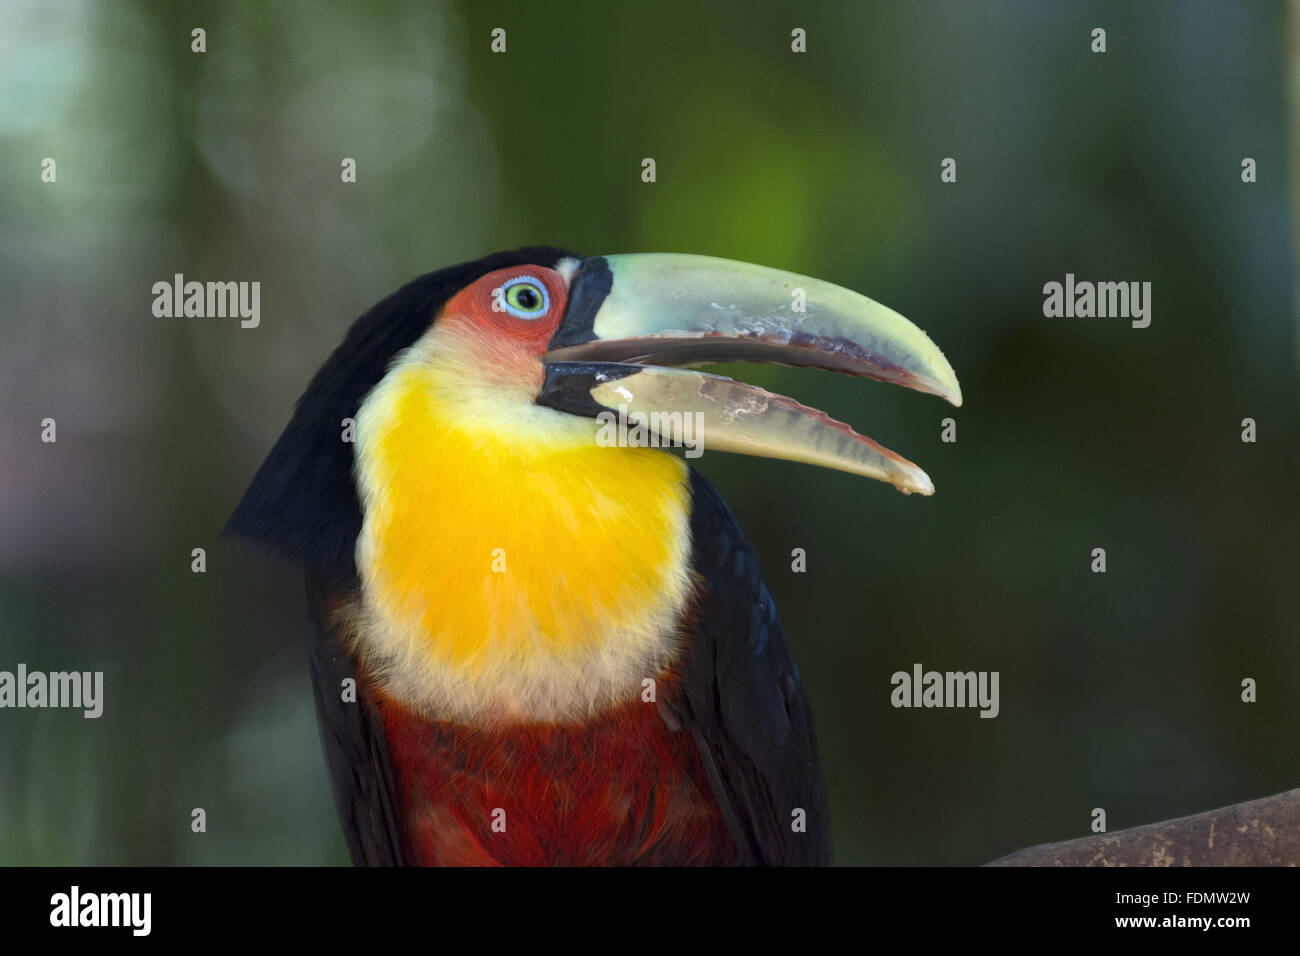 Chiudere toucan-di-fatturate sul verde parco degli uccelli Foto Stock